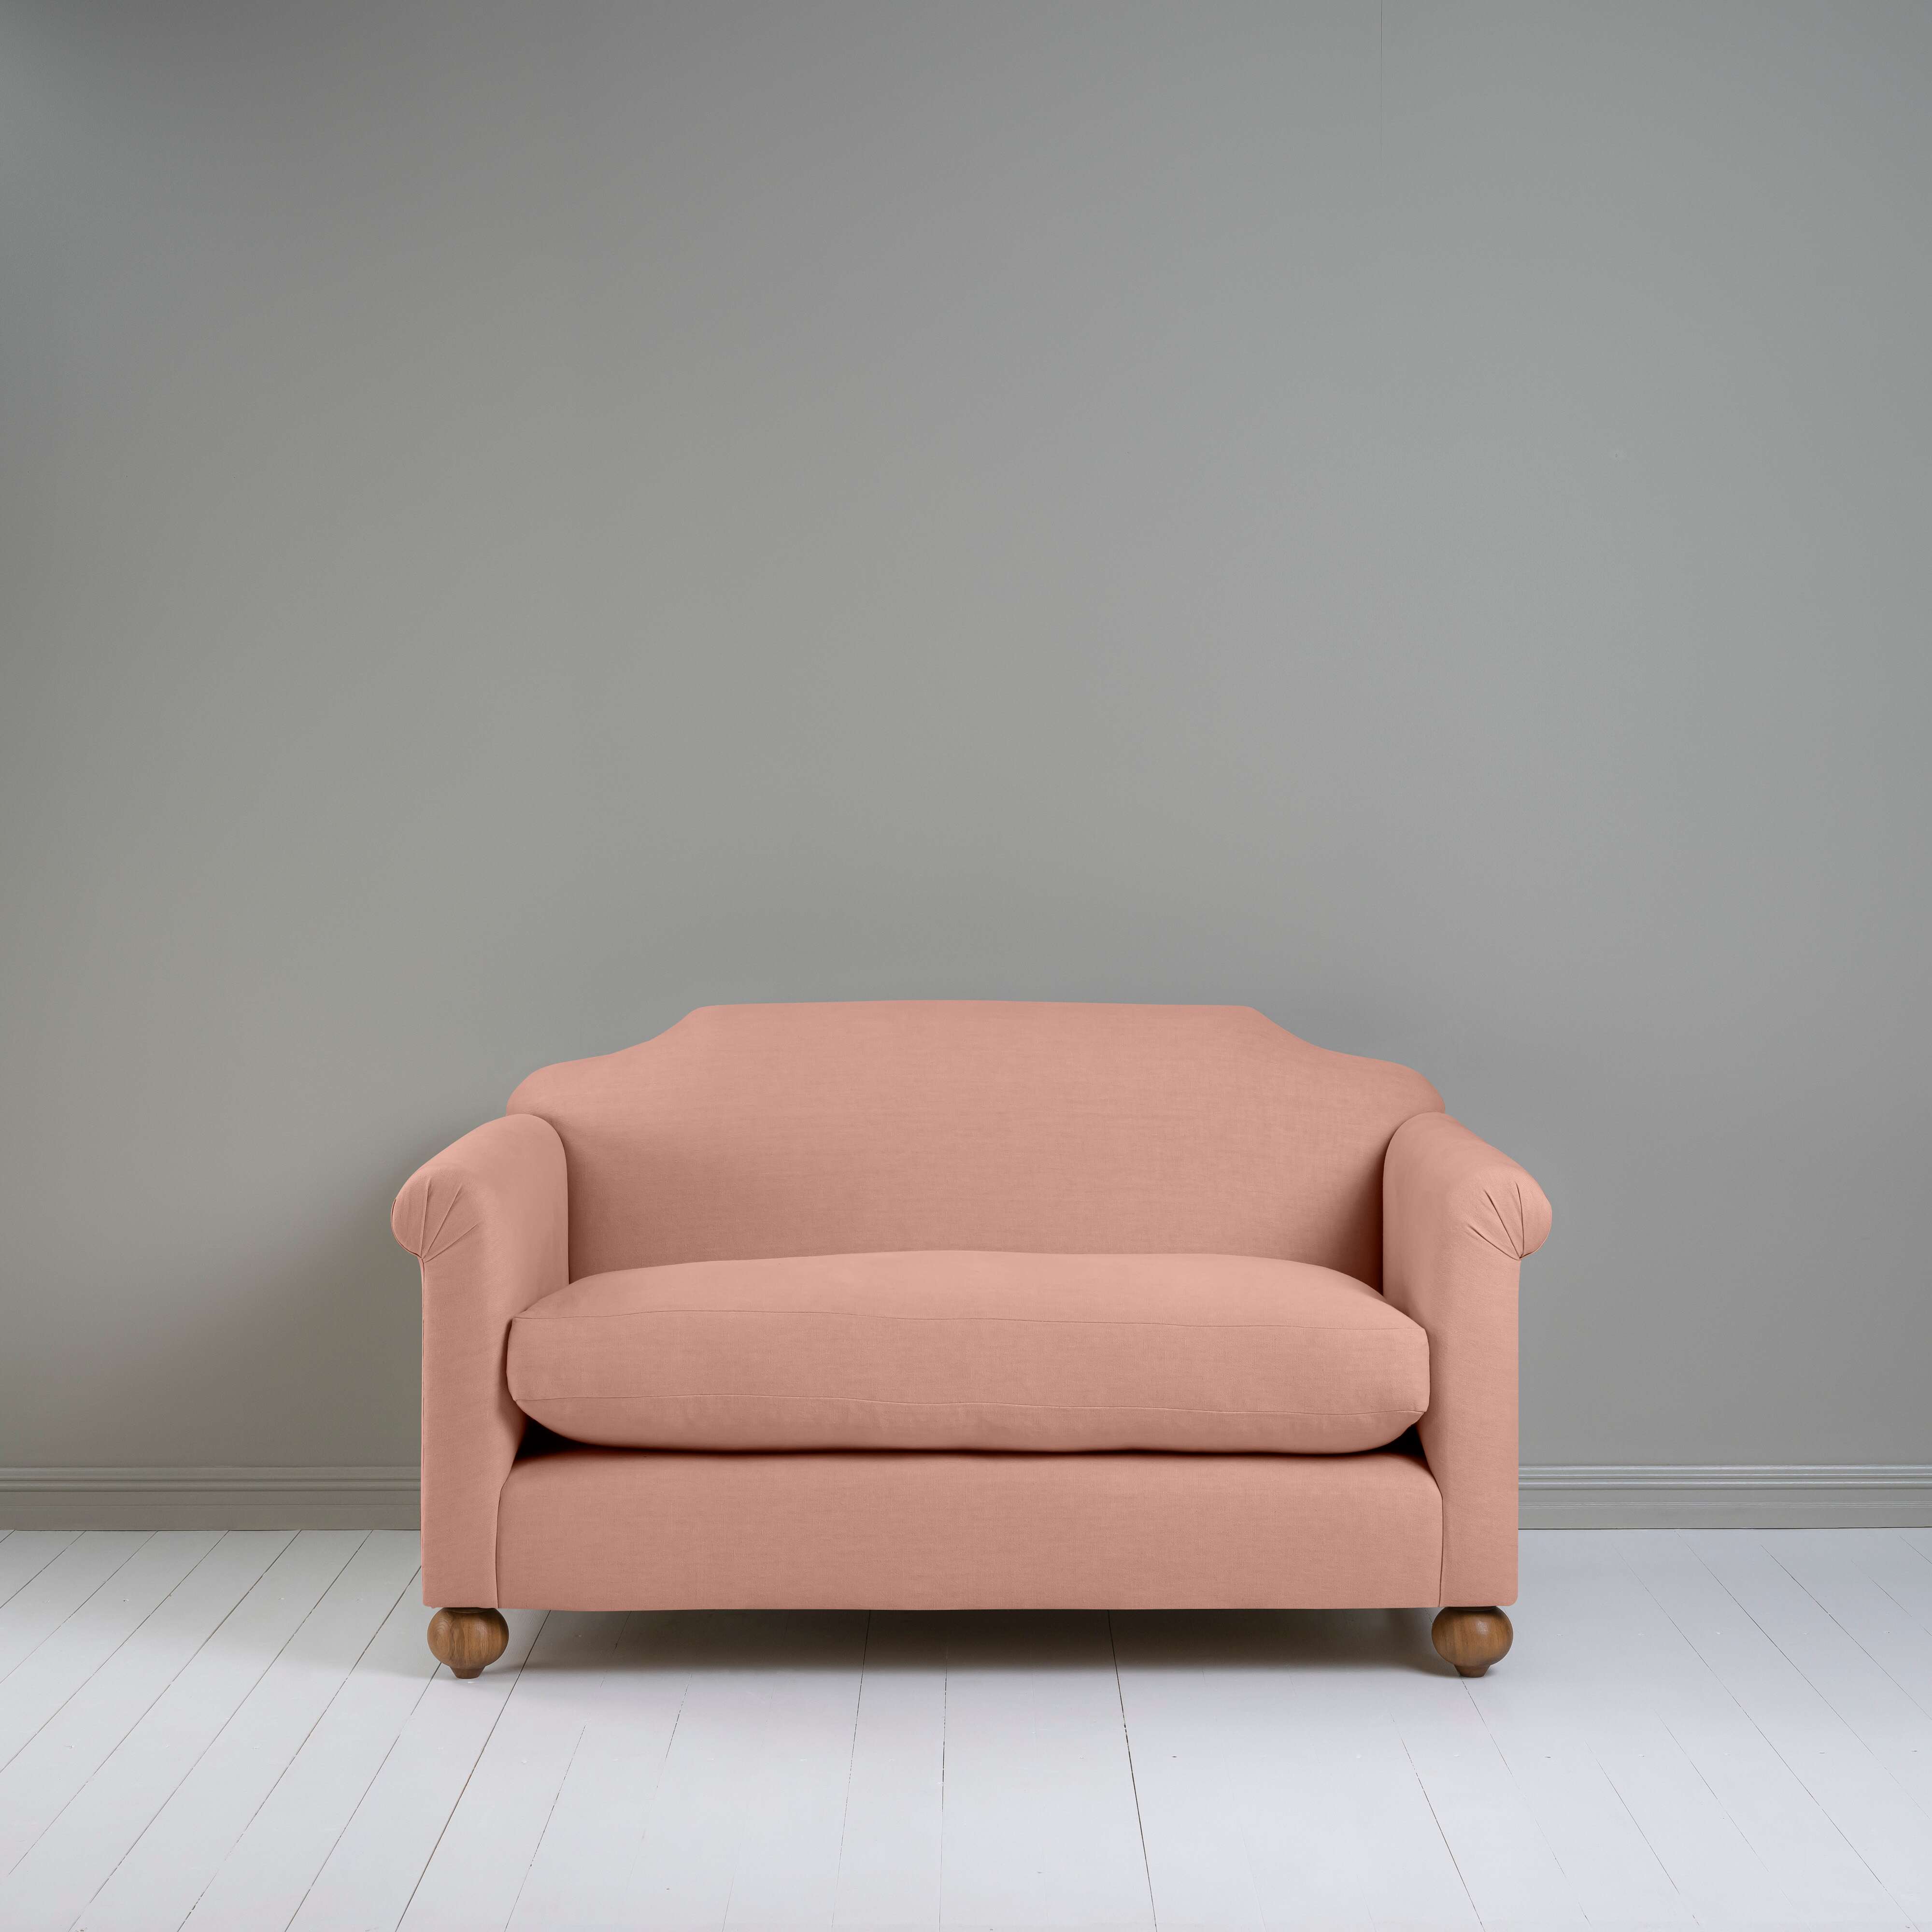  Dolittle 2 Seater Sofa in Laidback Linen Roseberry 